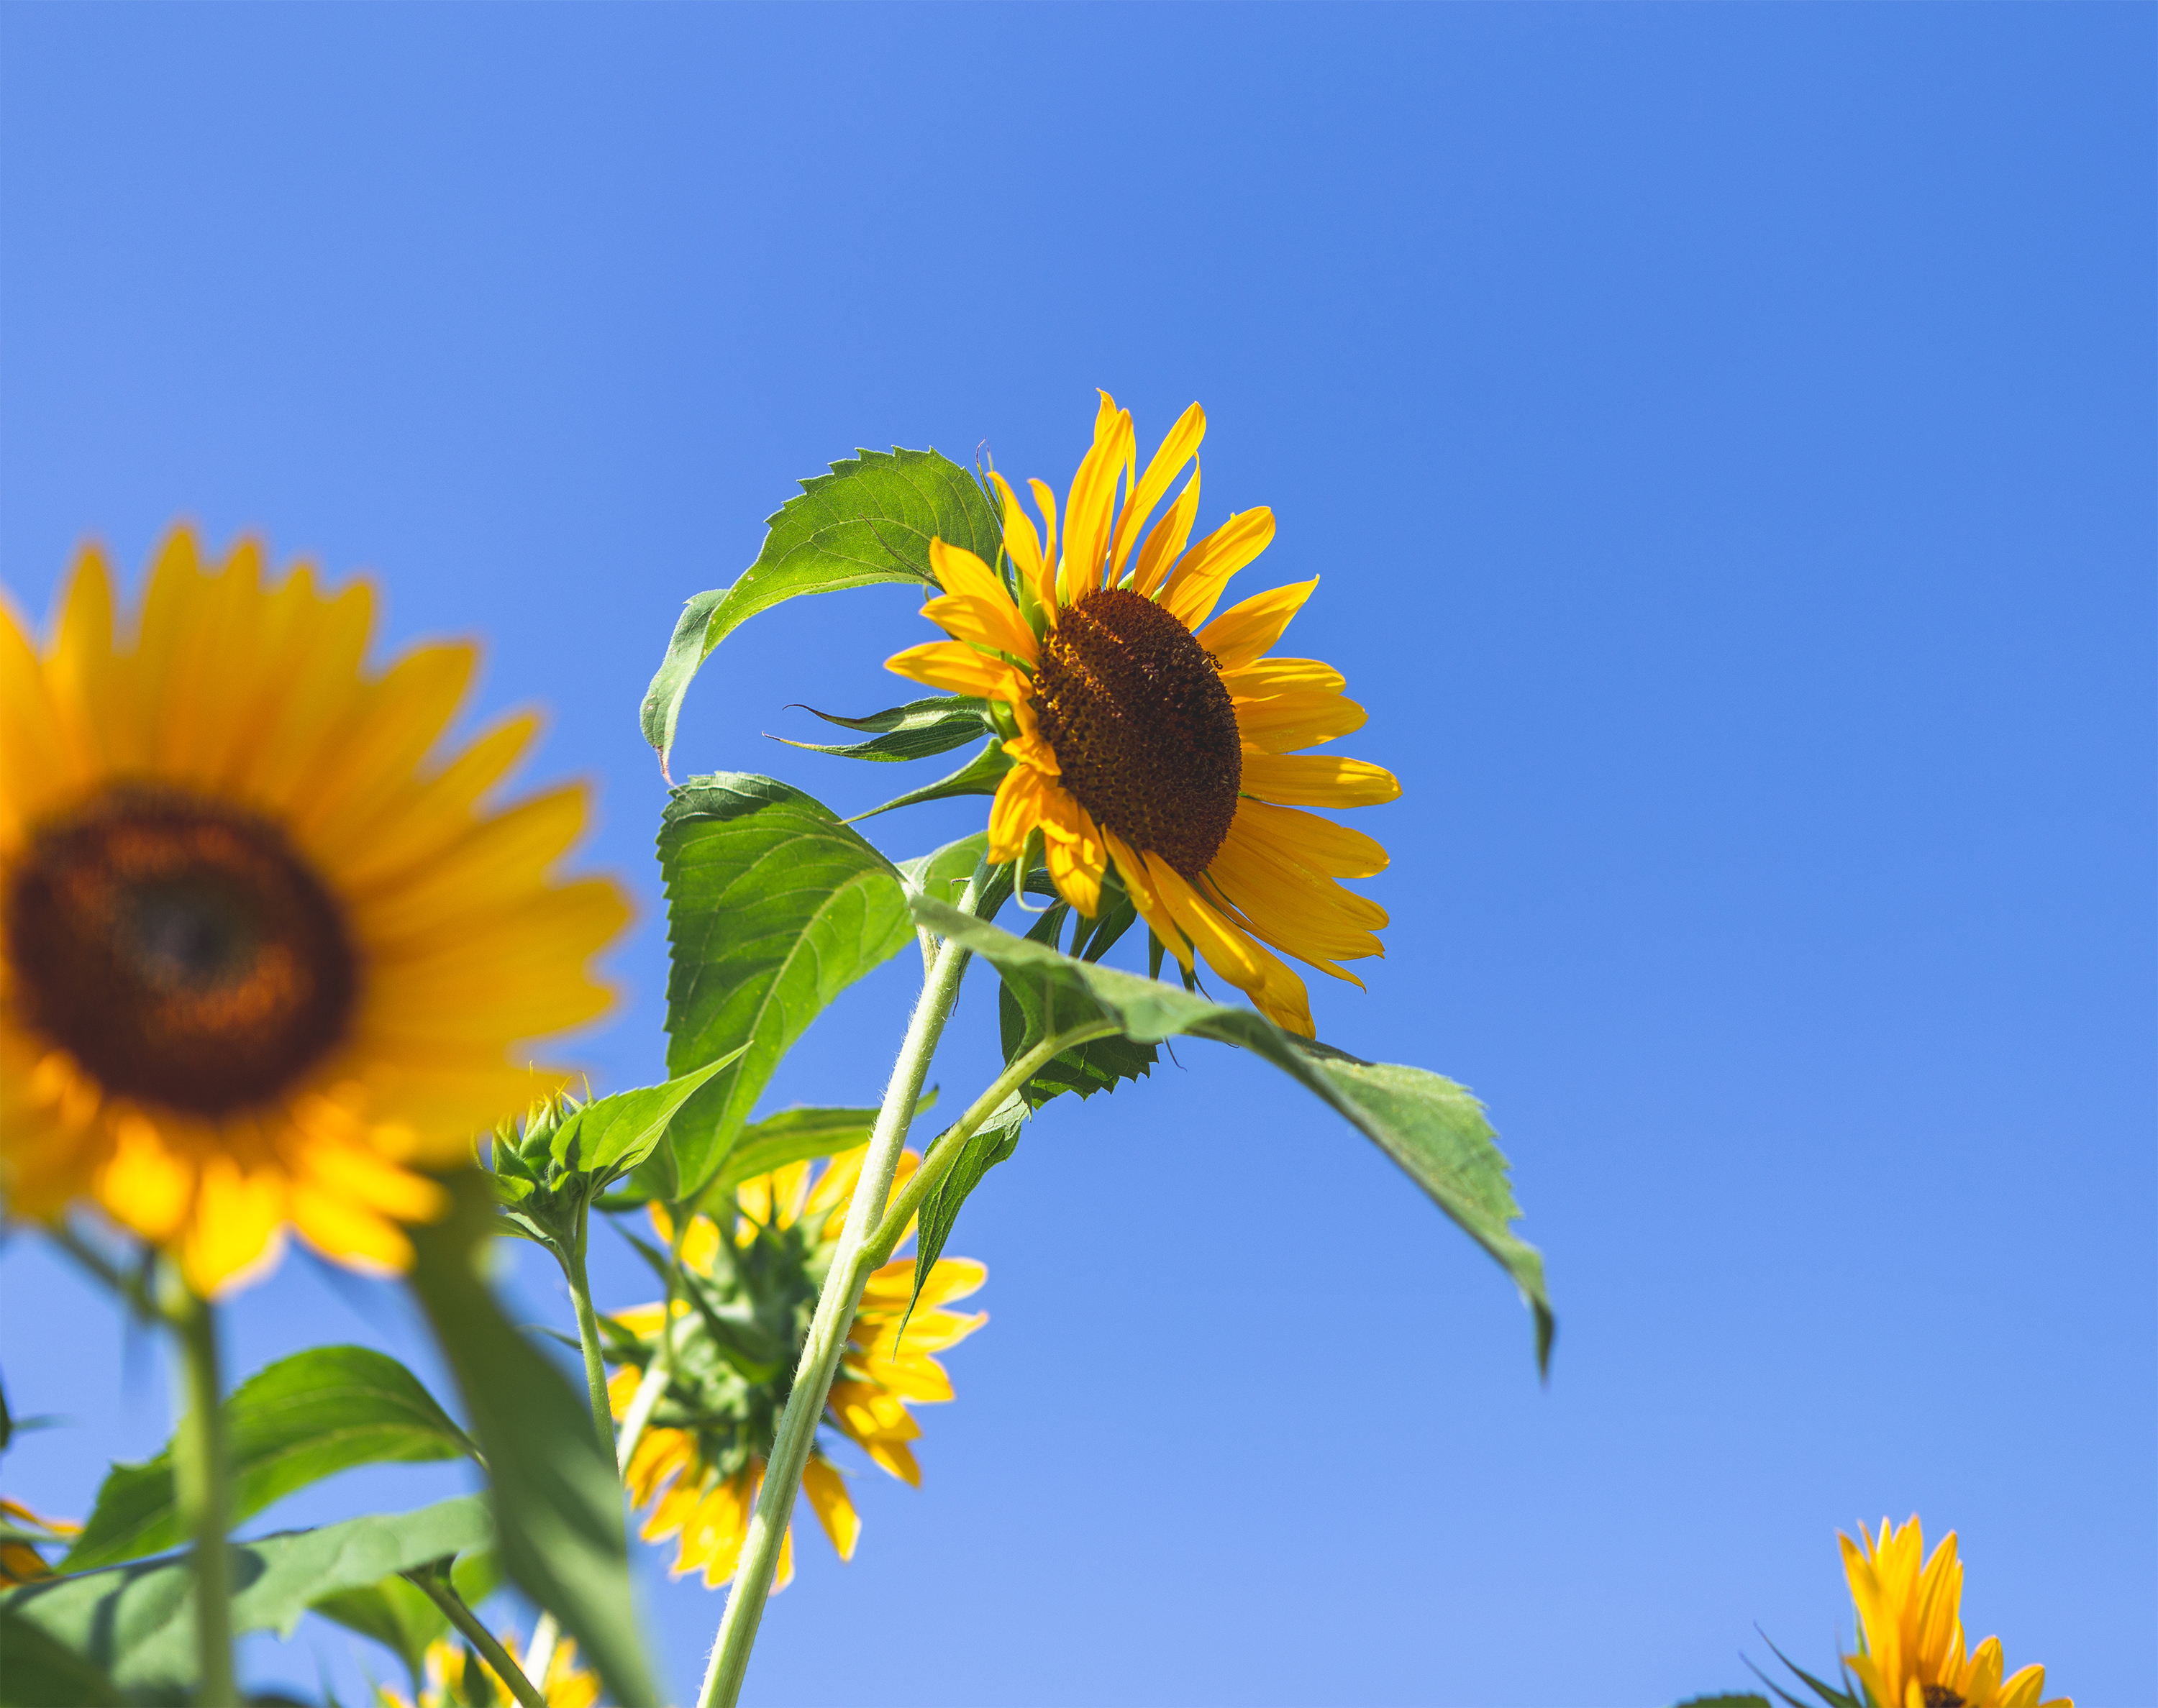 ひまわり 向日葵 と夏の空03 無料の高画質フリー写真素材